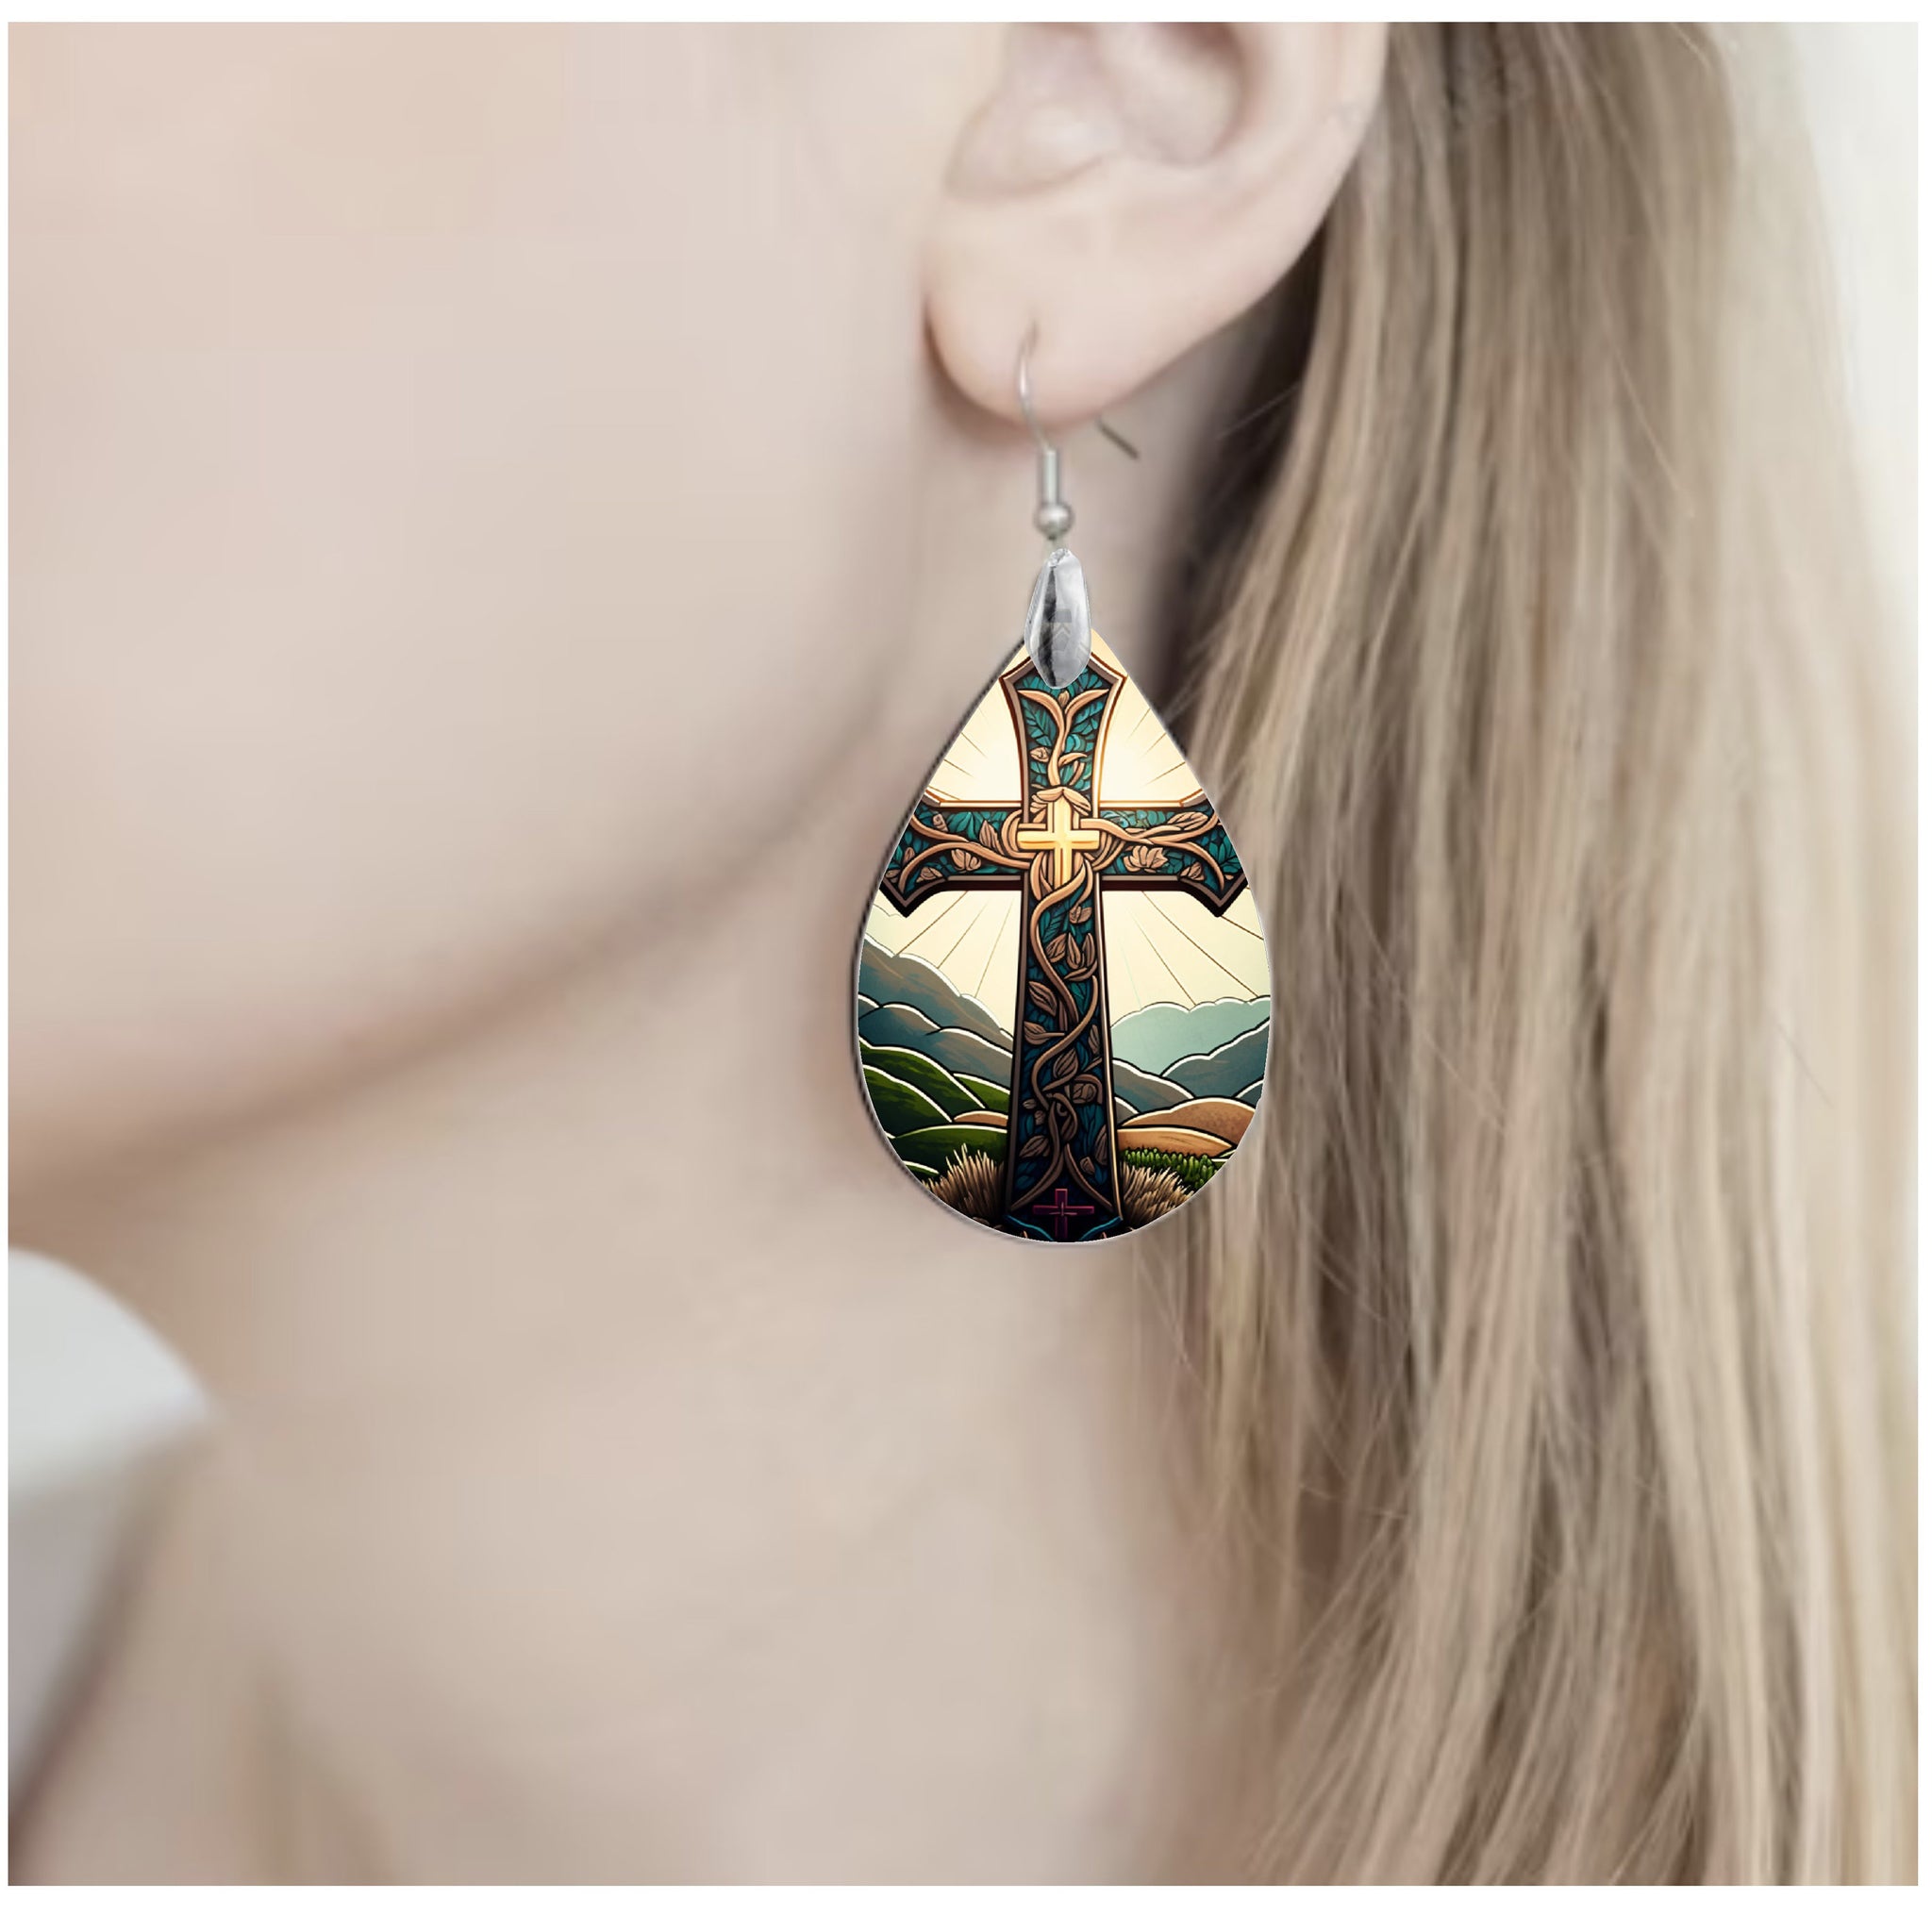 Religious Earrings, Cross Earrings, Easter Earrings, Dangle Earring, Faith Jewelry, Water Drop Earring, Custom Earring, Lightweight Ear Wire